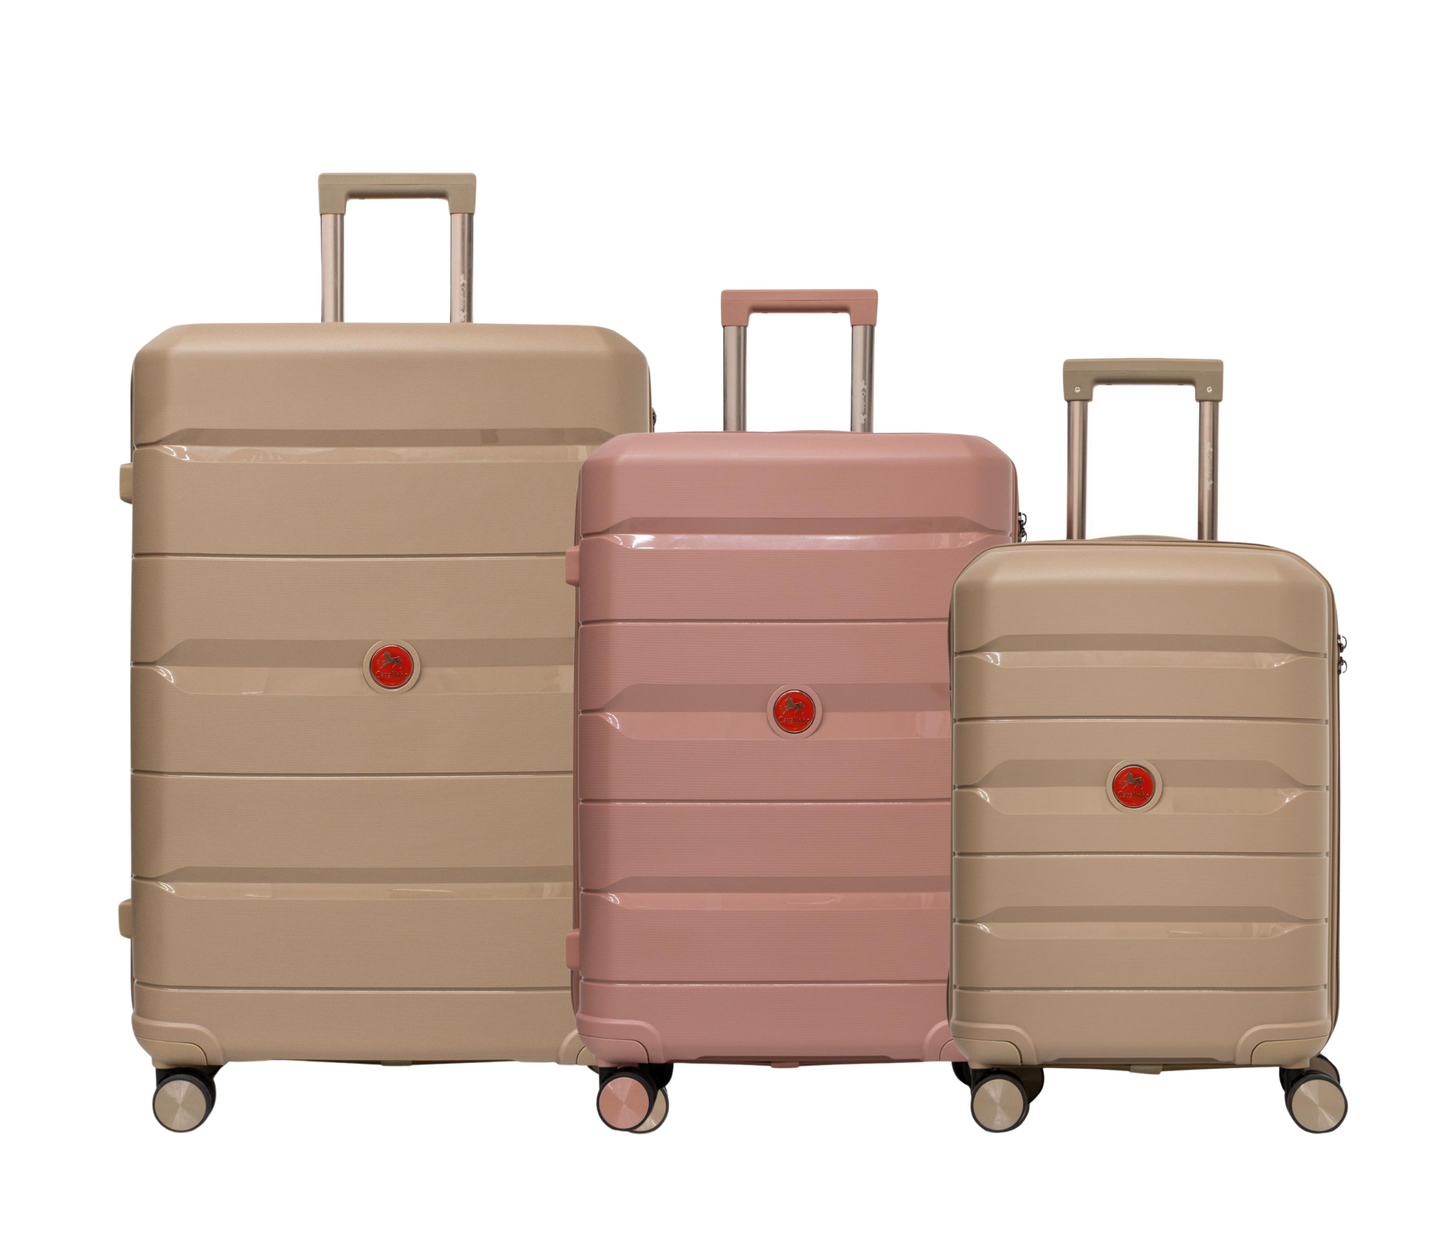 #color_ GoldenRod RoseGold GoldenRod | Cavalinho Canada & USA Oasis 3 Piece Luggage Set (20", 24" & 28") - GoldenRod RoseGold GoldenRod - 68040001.071807.202428._1